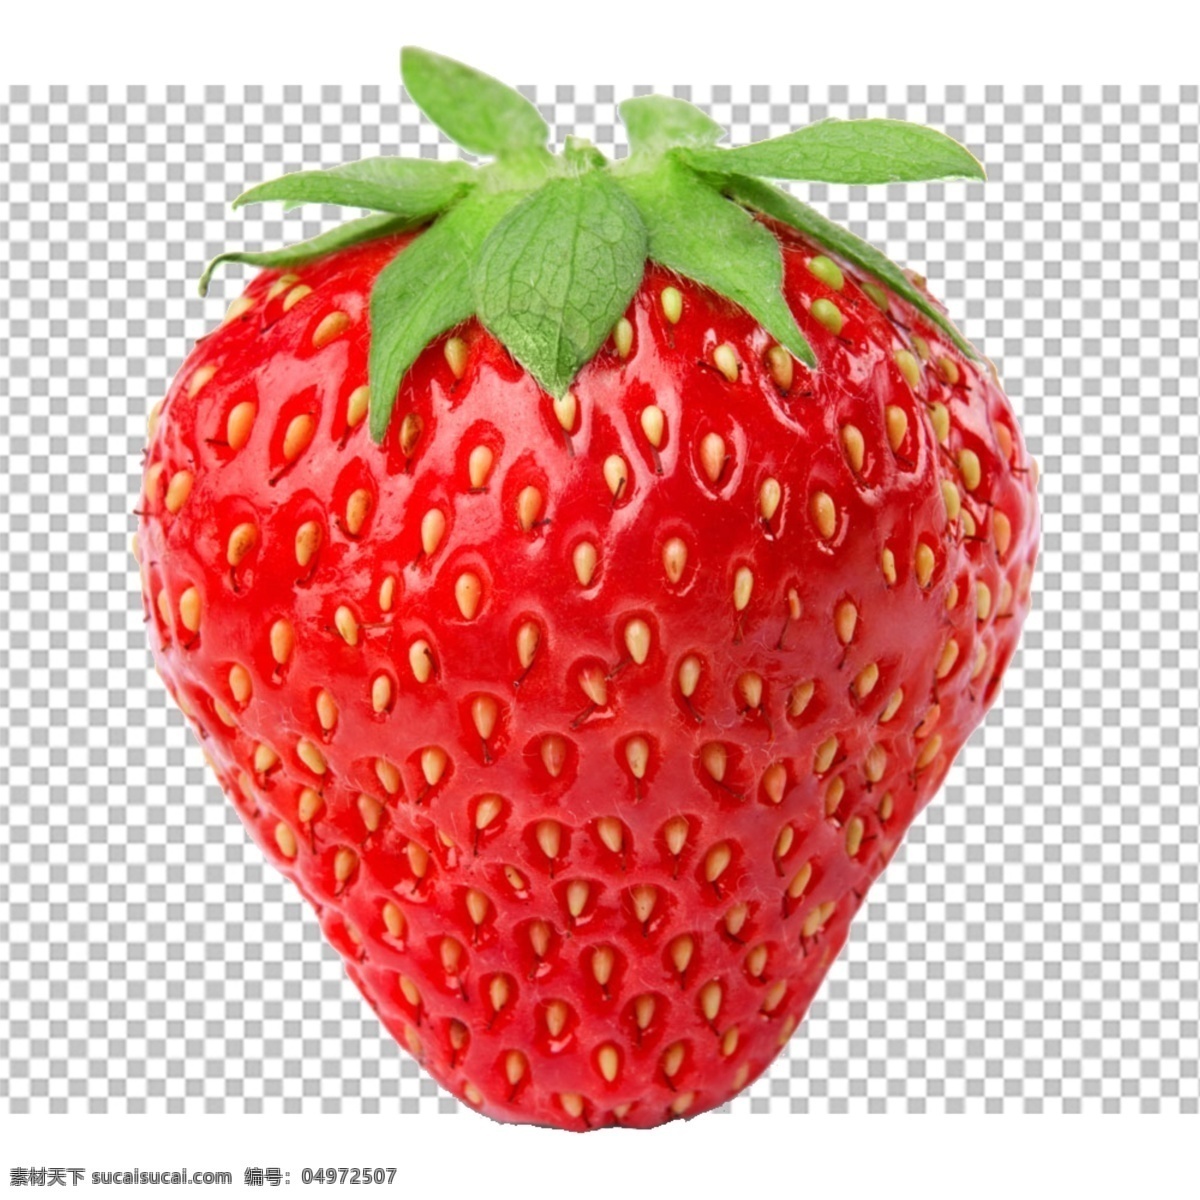 草莓图片 草莓 草莓特写 透明底草莓 透明底水果 免抠图 水果 分层图 通道 分层 新鲜 特写 透明背景 透明底 抠图 png图 生物世界